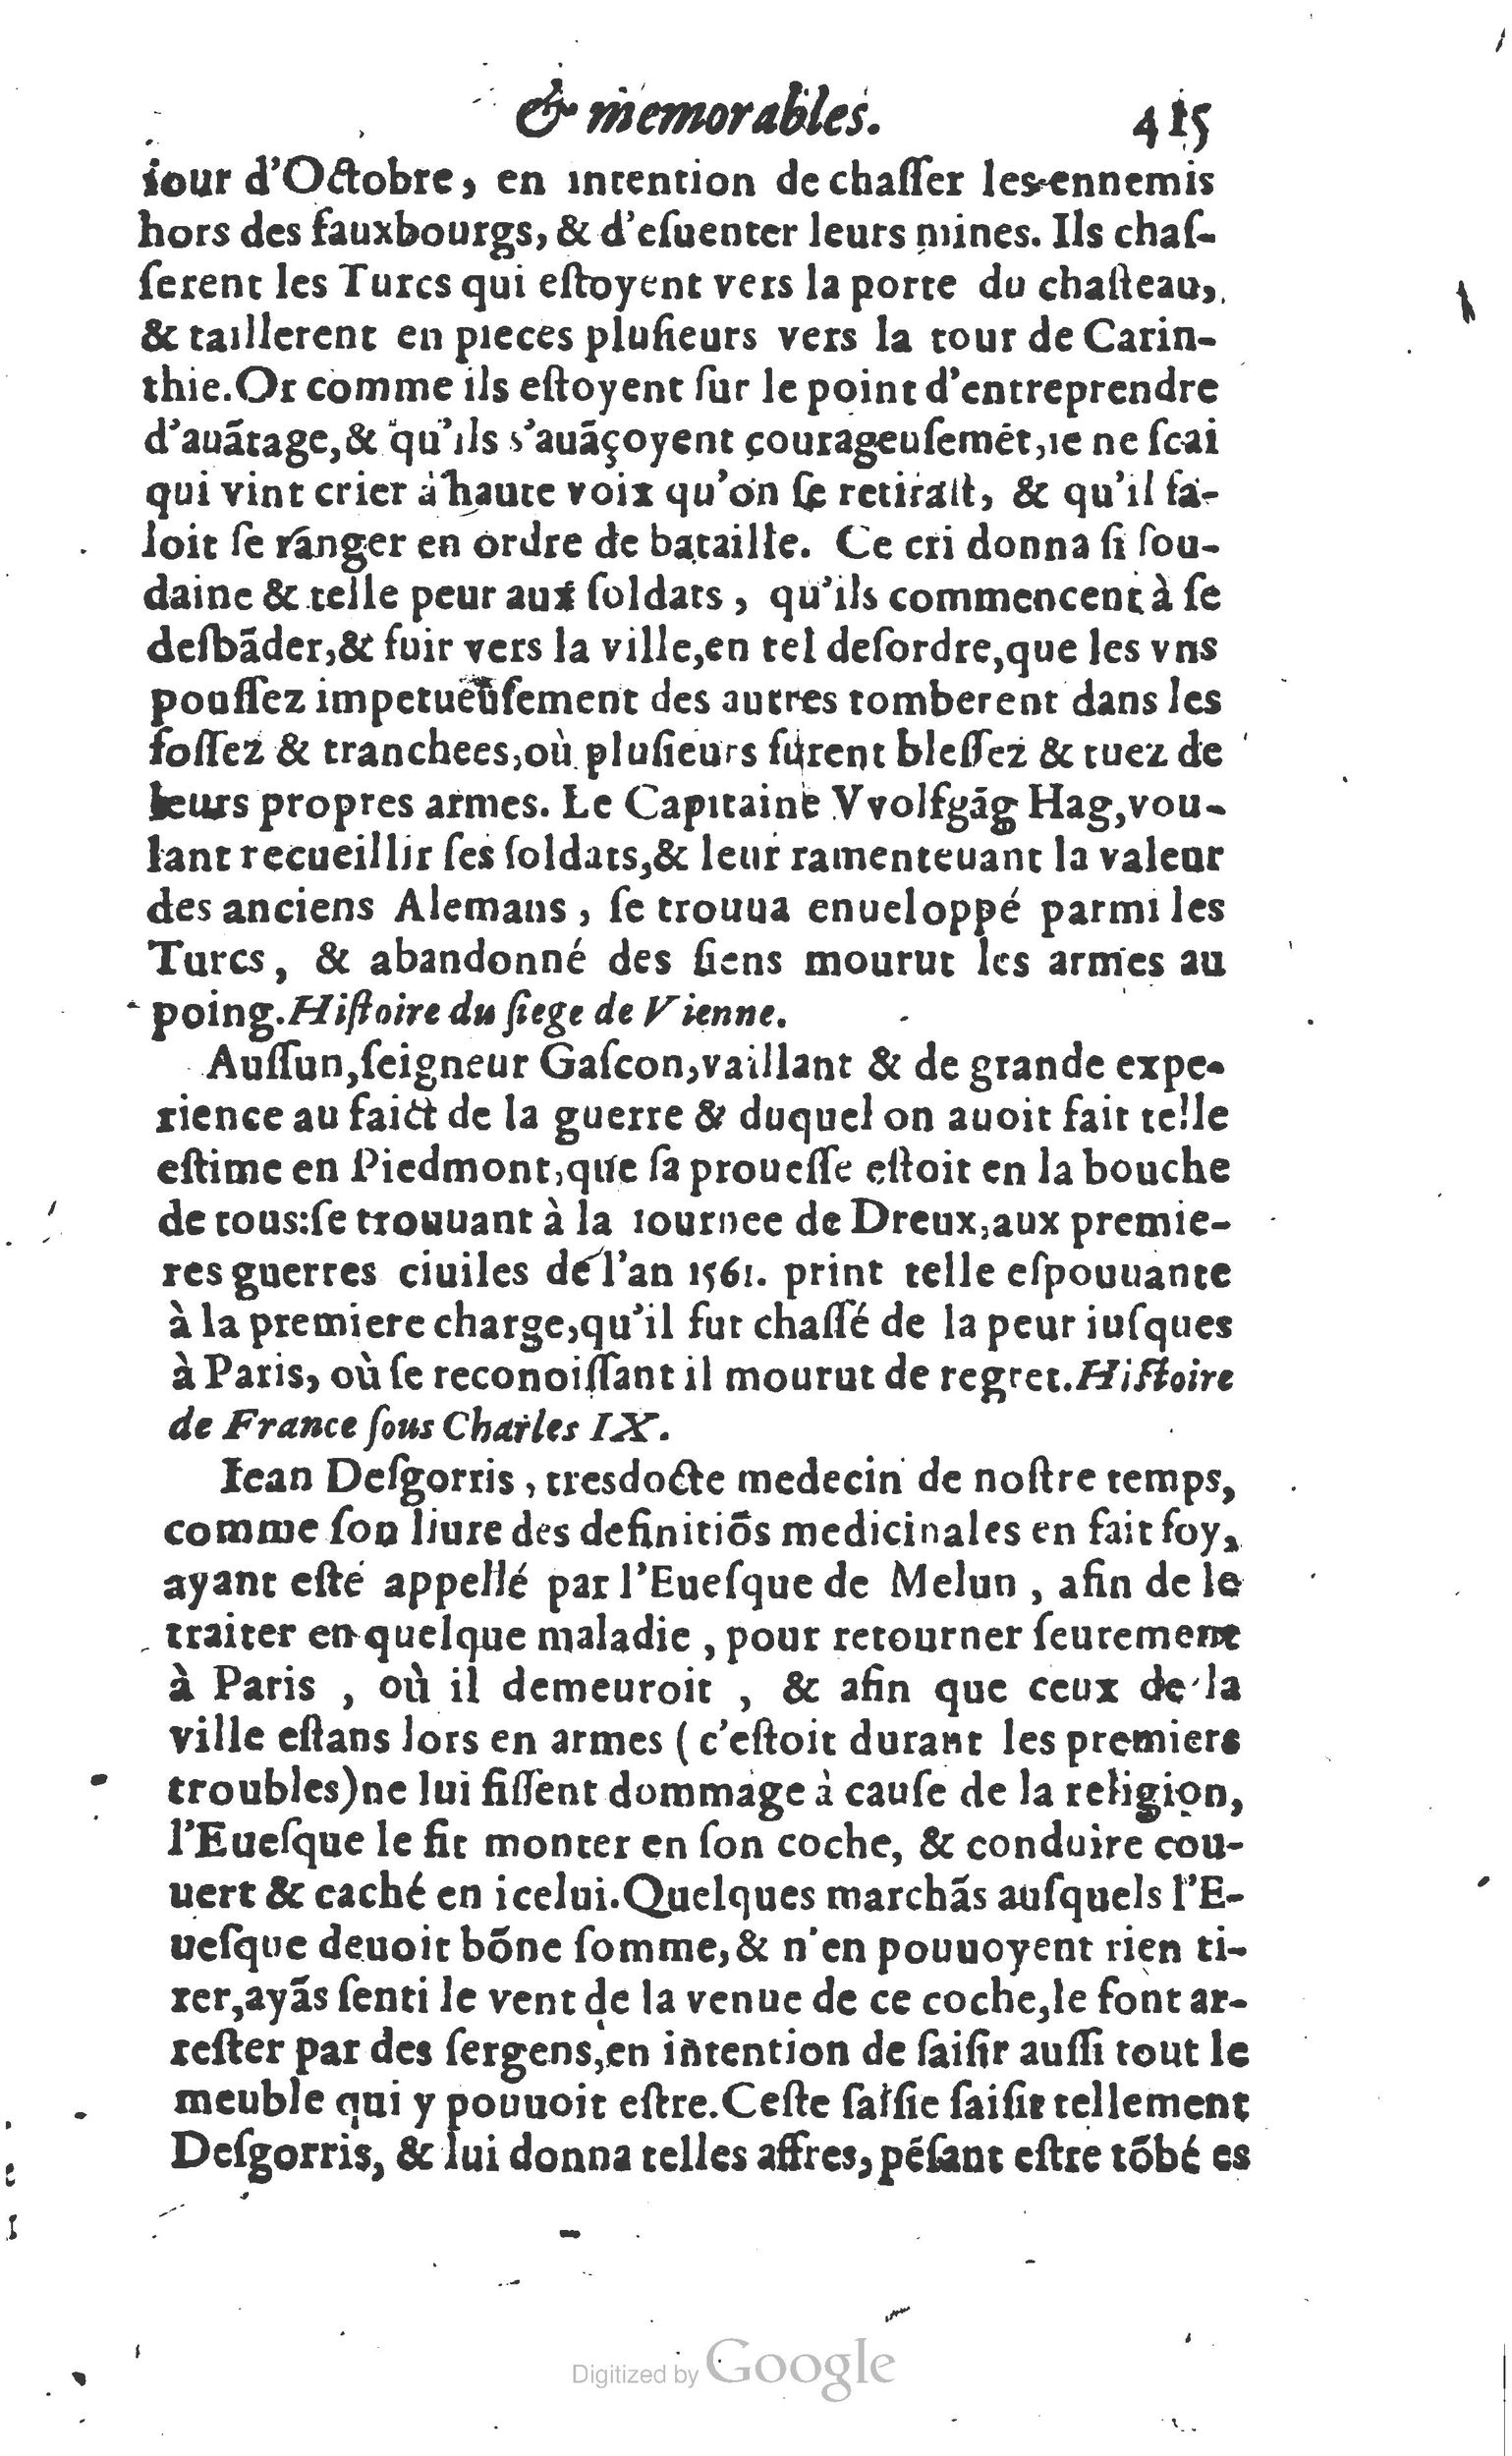 1610 Trésor d’histoires admirables et mémorables de nostre temps Marceau Princeton_Page_0436.jpg